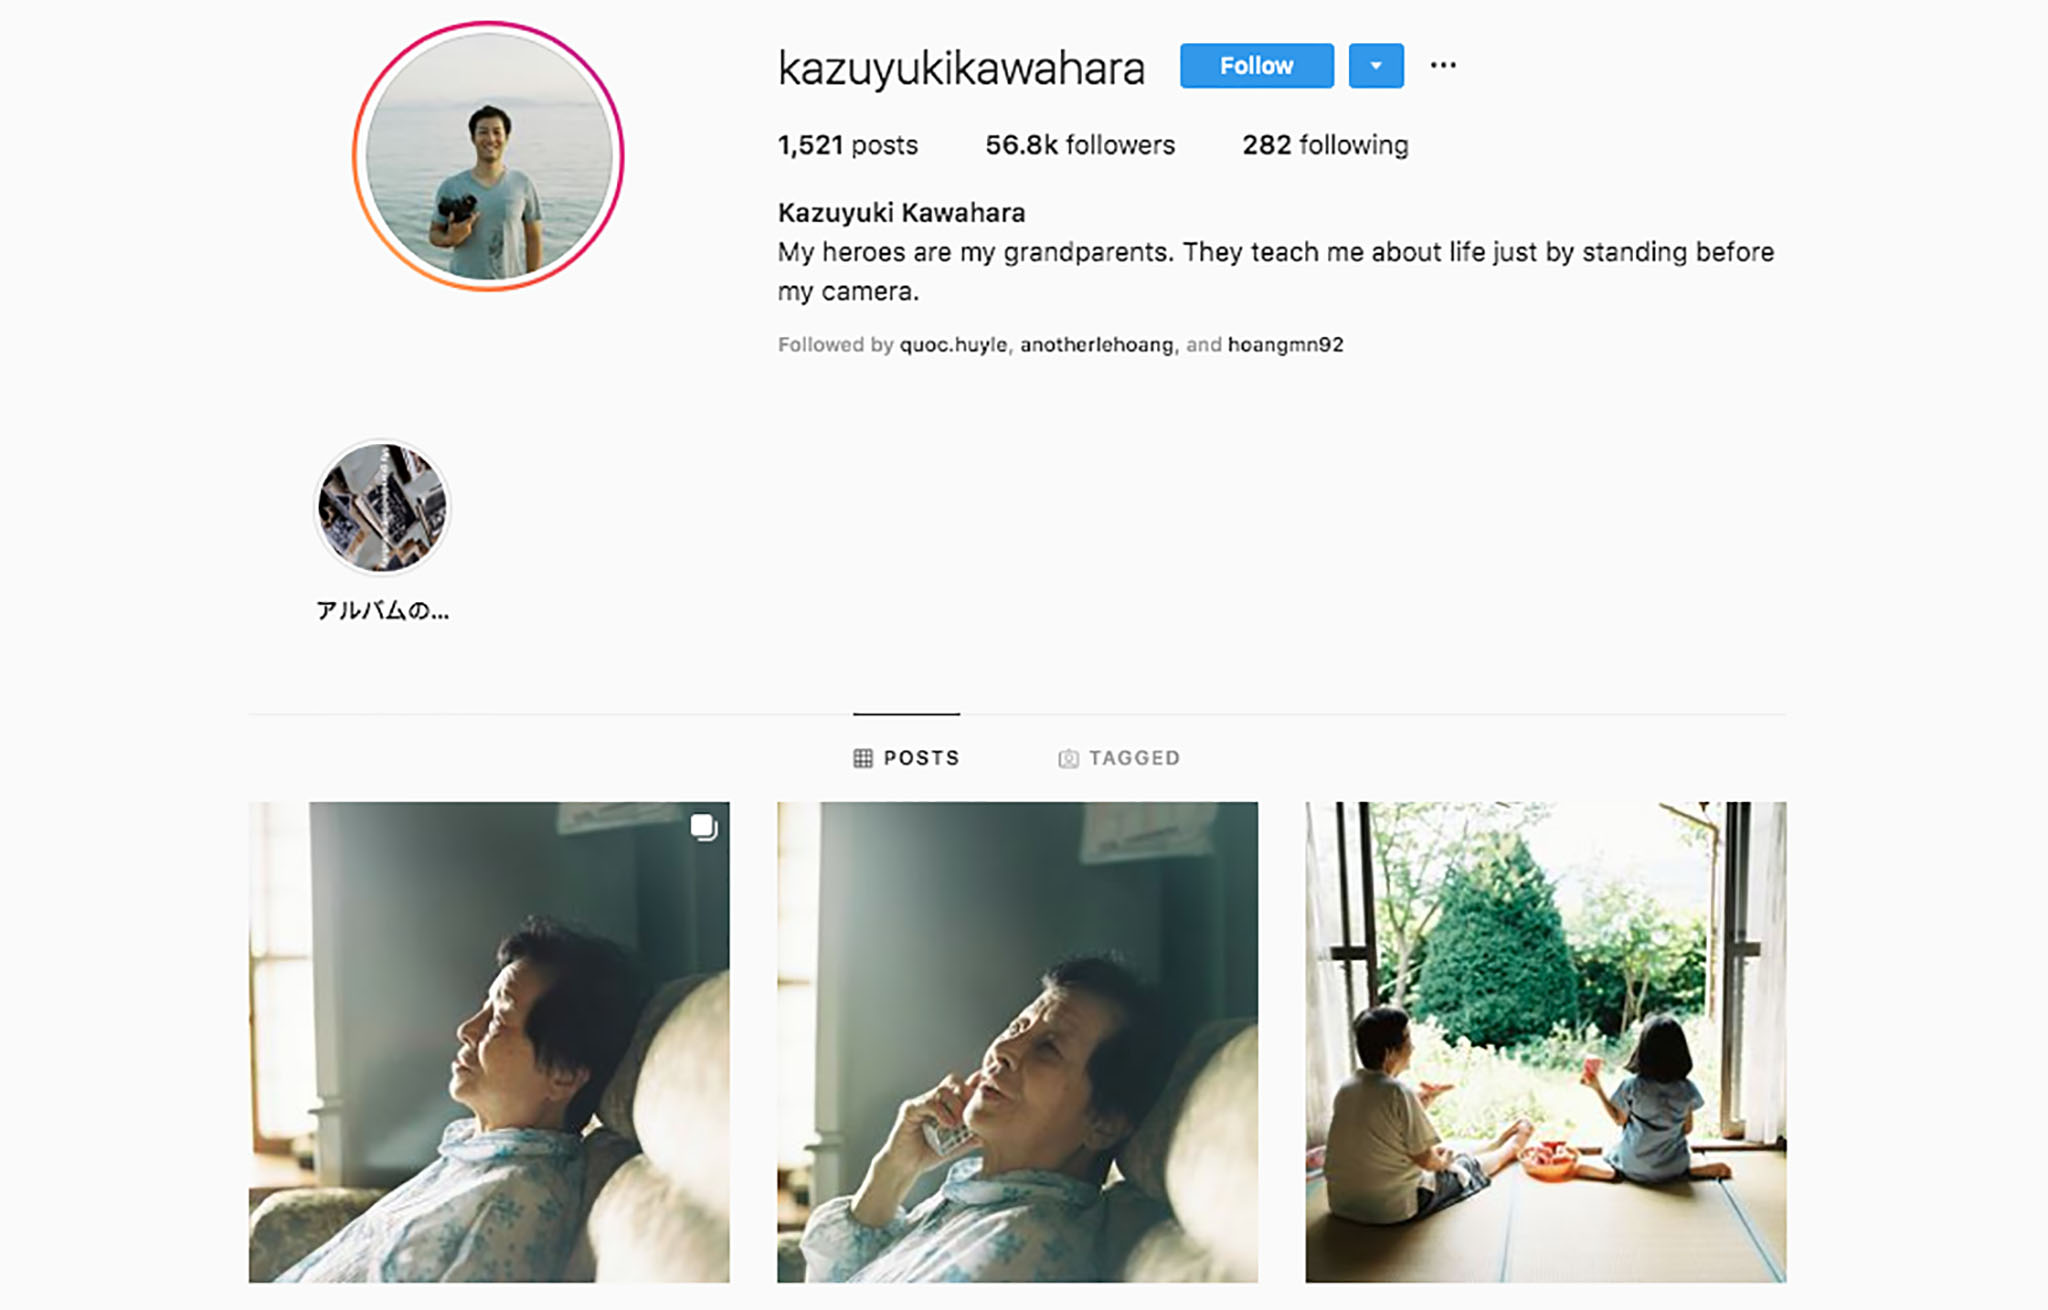 kazuyukikawahara-instagram.jpg